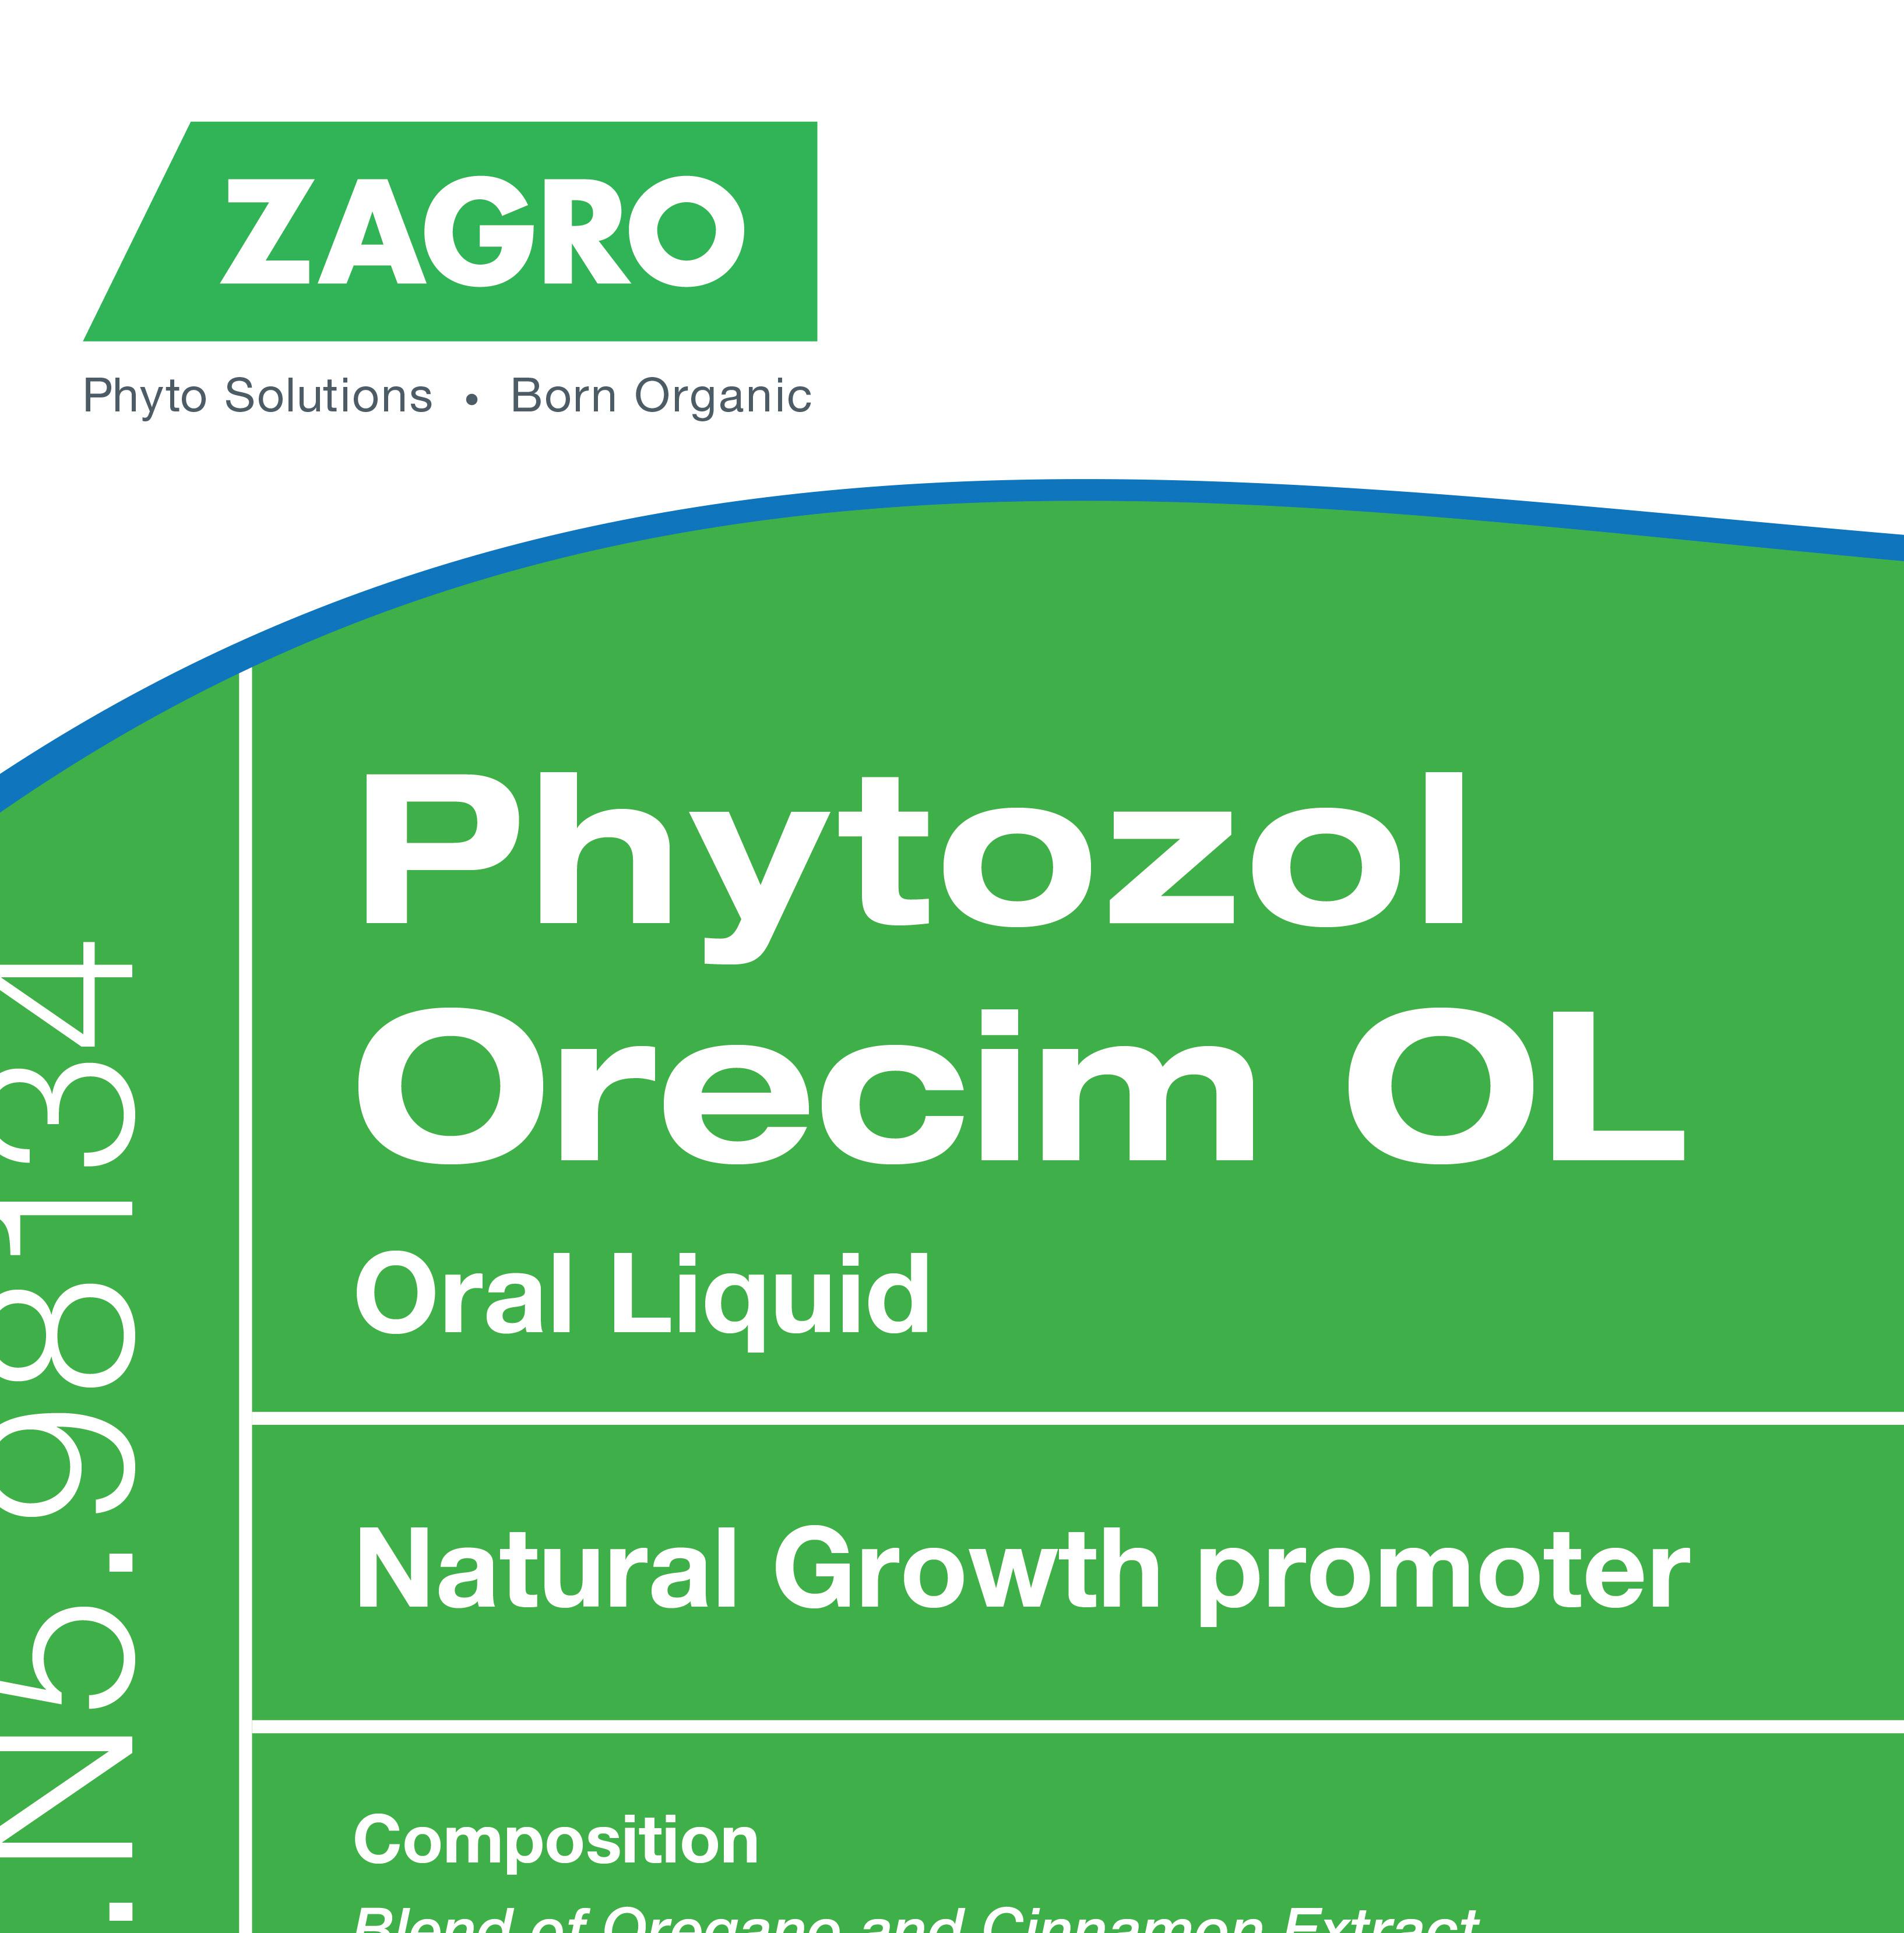 Phytozol Orecim